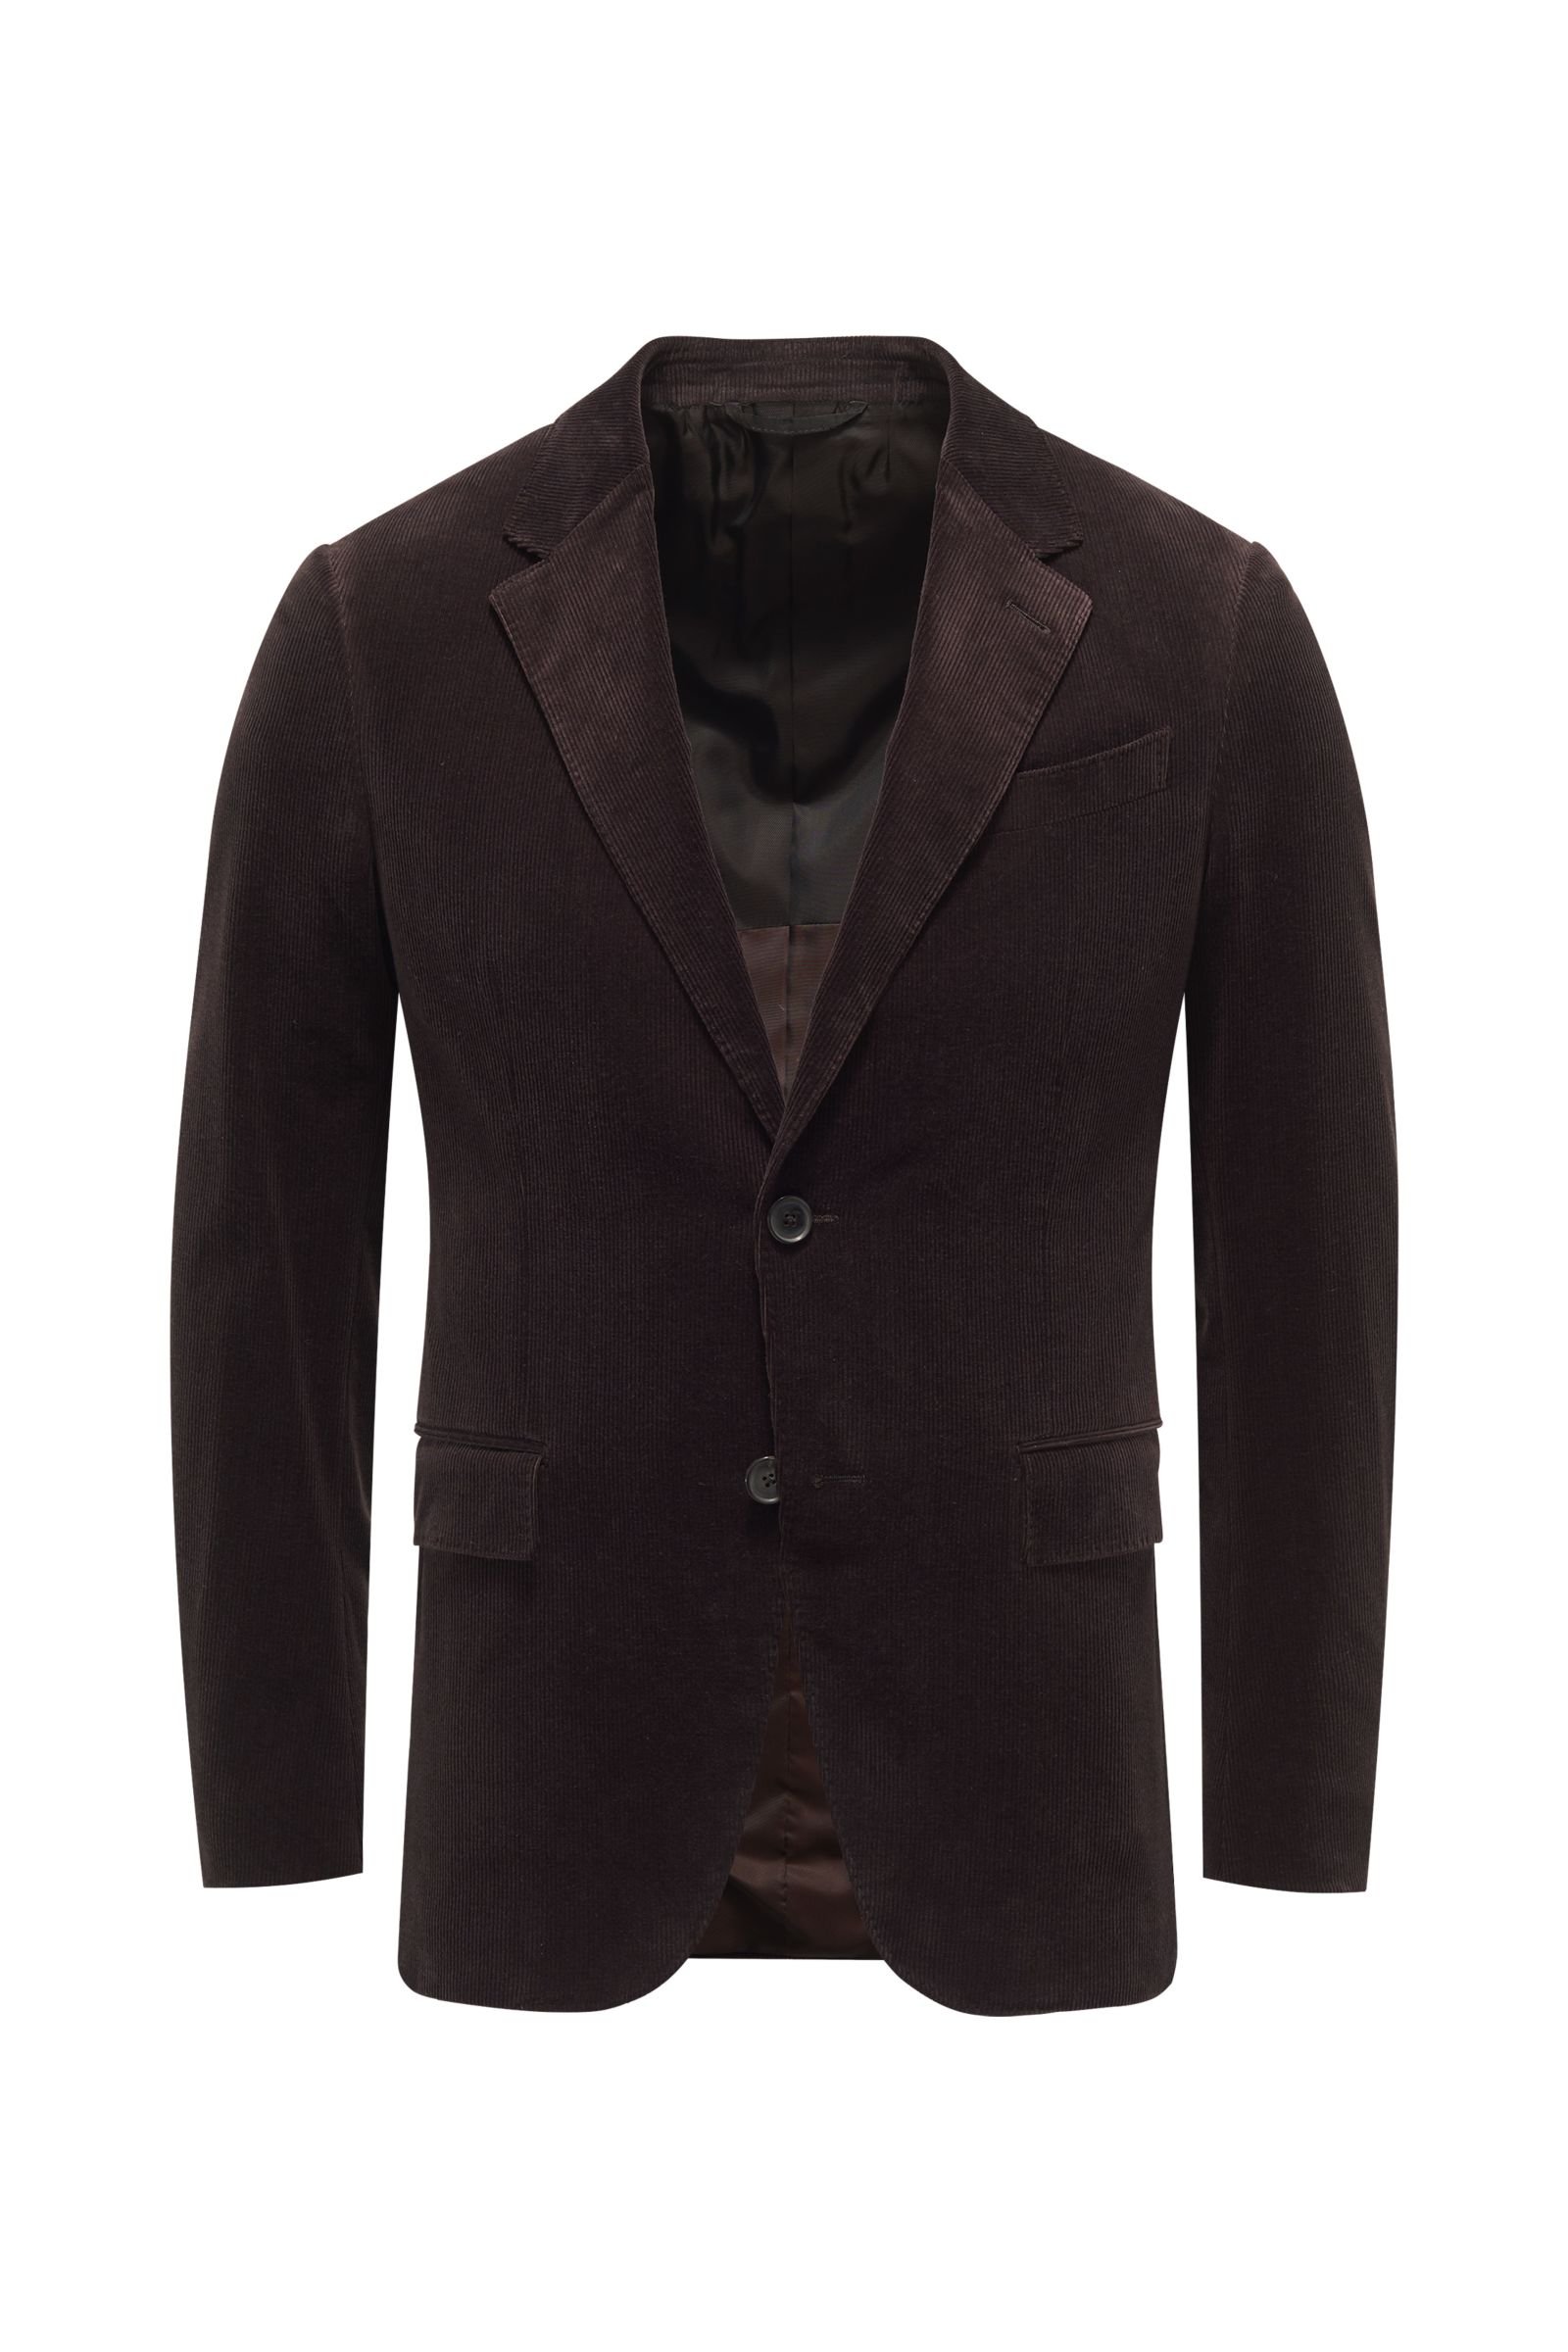 Corduroy smart-casual jacket 'Cashco' dark brown